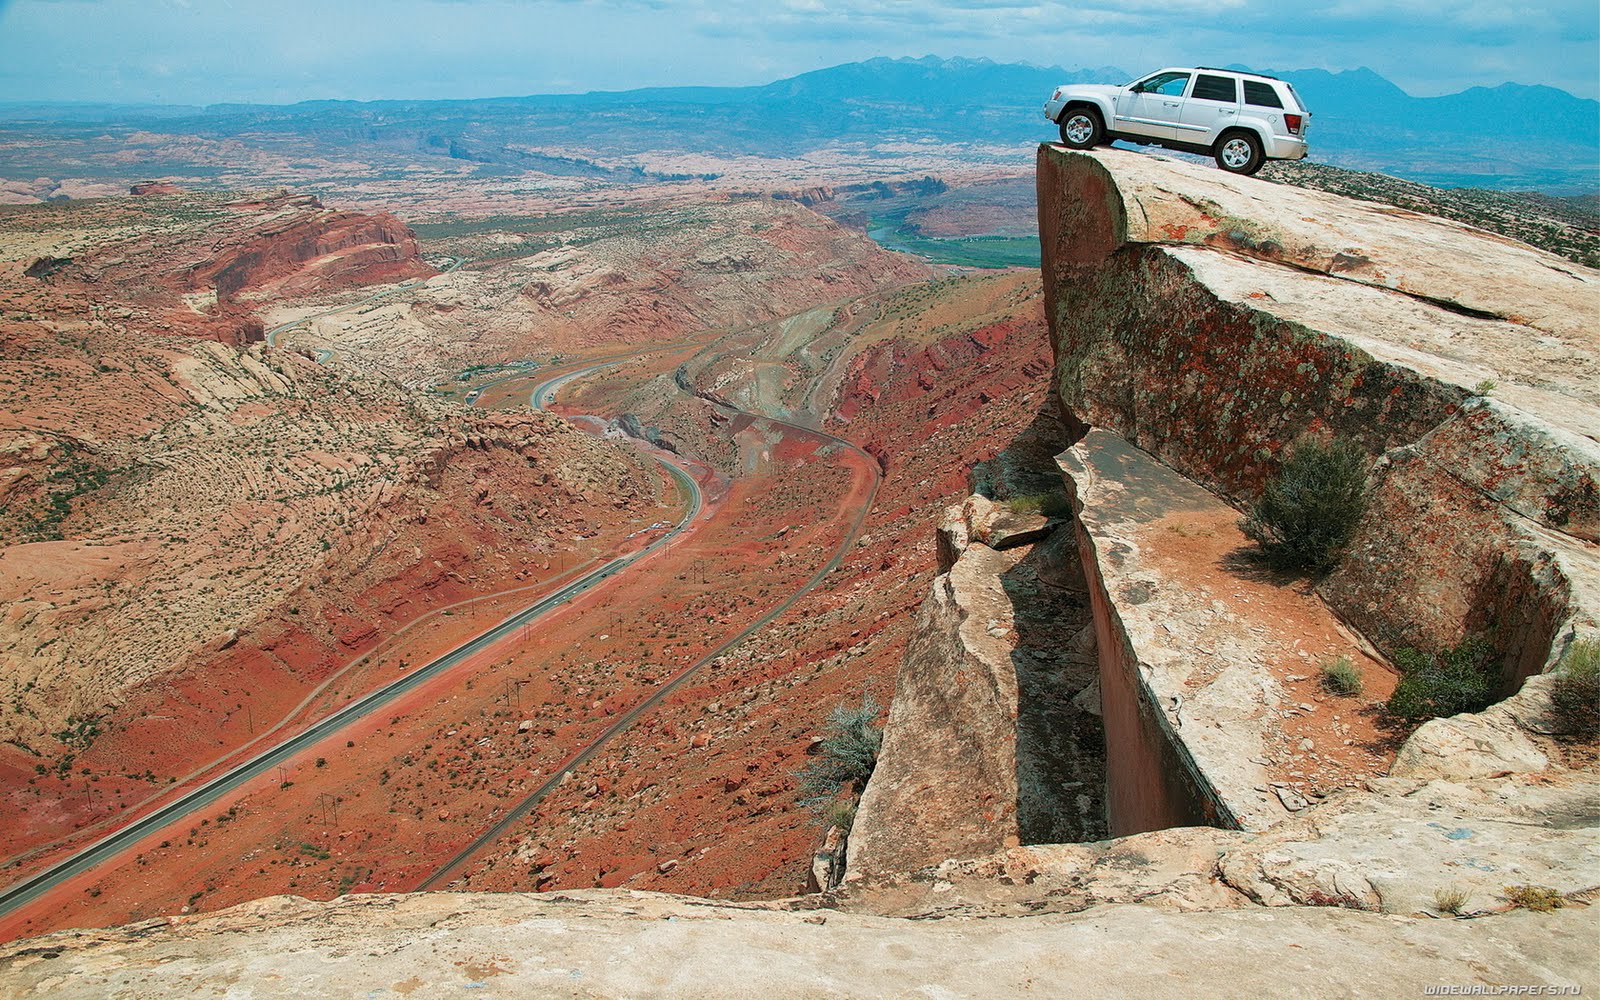 https://blogger.googleusercontent.com/img/b/R29vZ2xl/AVvXsEiPbWWodvM2LGlaUk8xsNf4Va74Dzayxha0mL2A7yzEWLKsZulj4c963C6Vl6mrOTPX3ORXBebTm9UG1tYbwvLFCRzQzYbGSHLnxJFGKZvOv9aTbu2CA3B0kY4now8EovHny046NpOh7jk/s1600/Beautiful+Car+On+The+Canion+Cliff+HD+Wallpaper.jpg